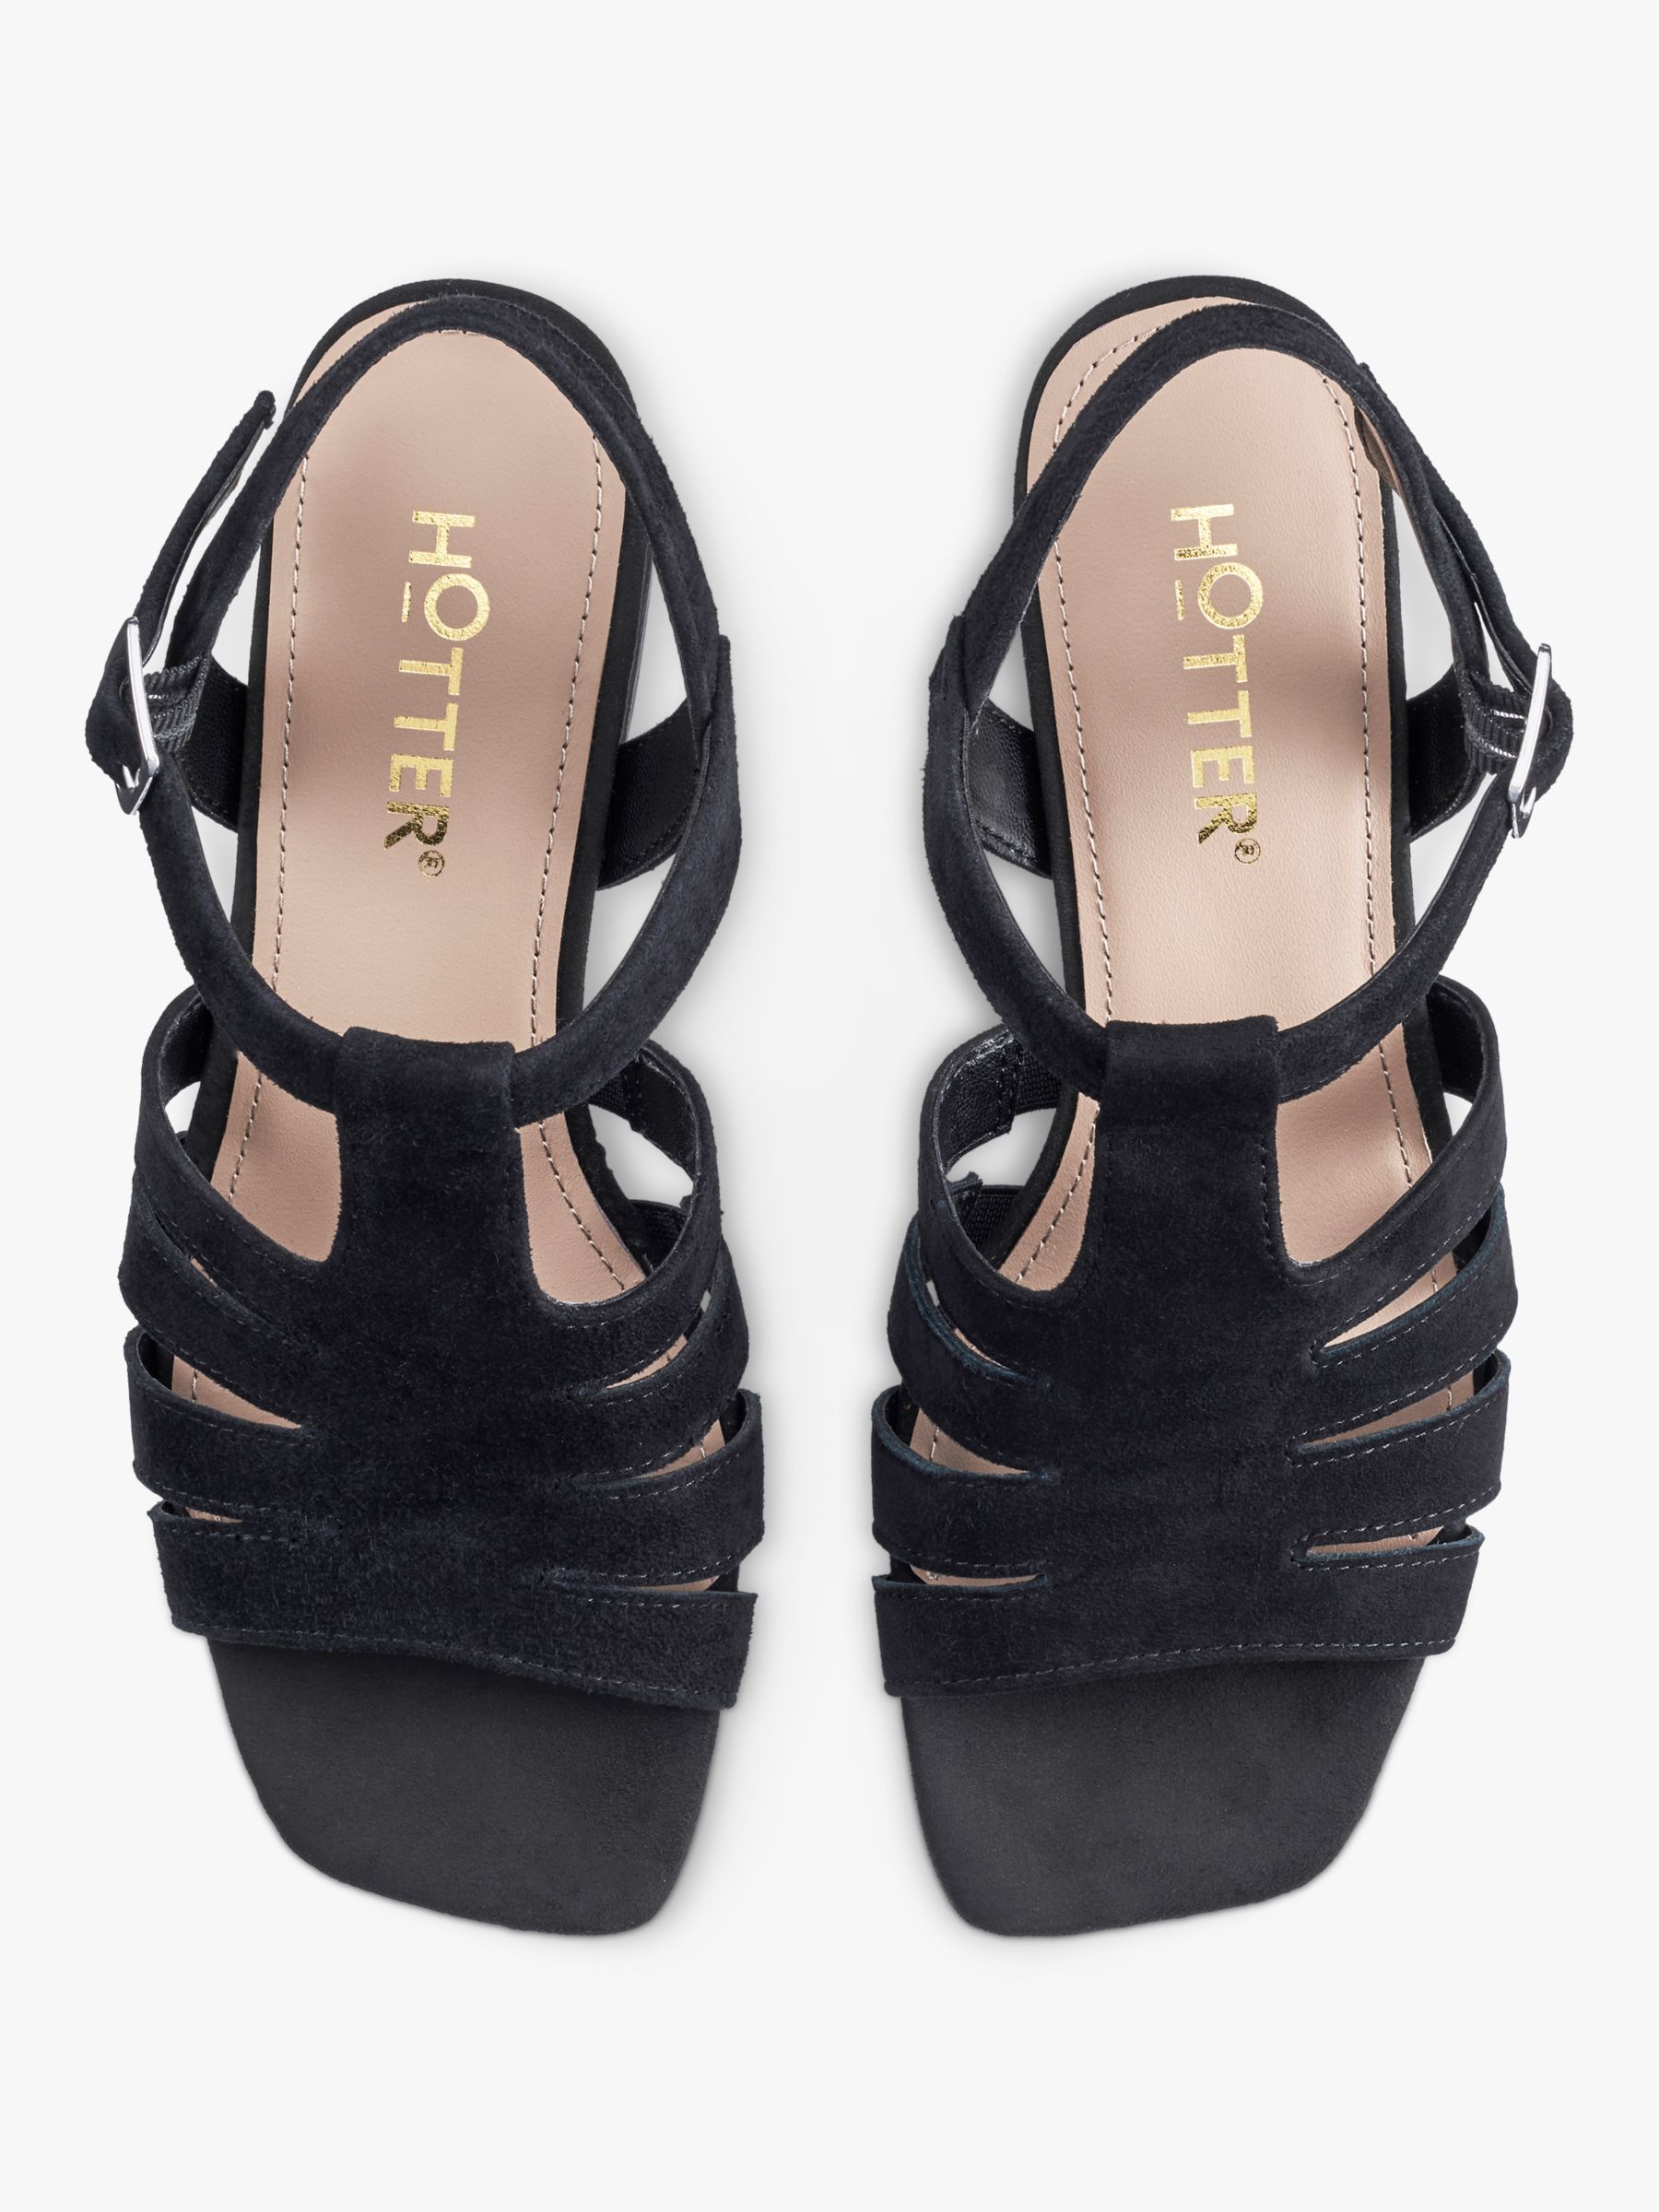 Buy Hotter Portofino Block Heel Suede Sandals, Black Online at johnlewis.com